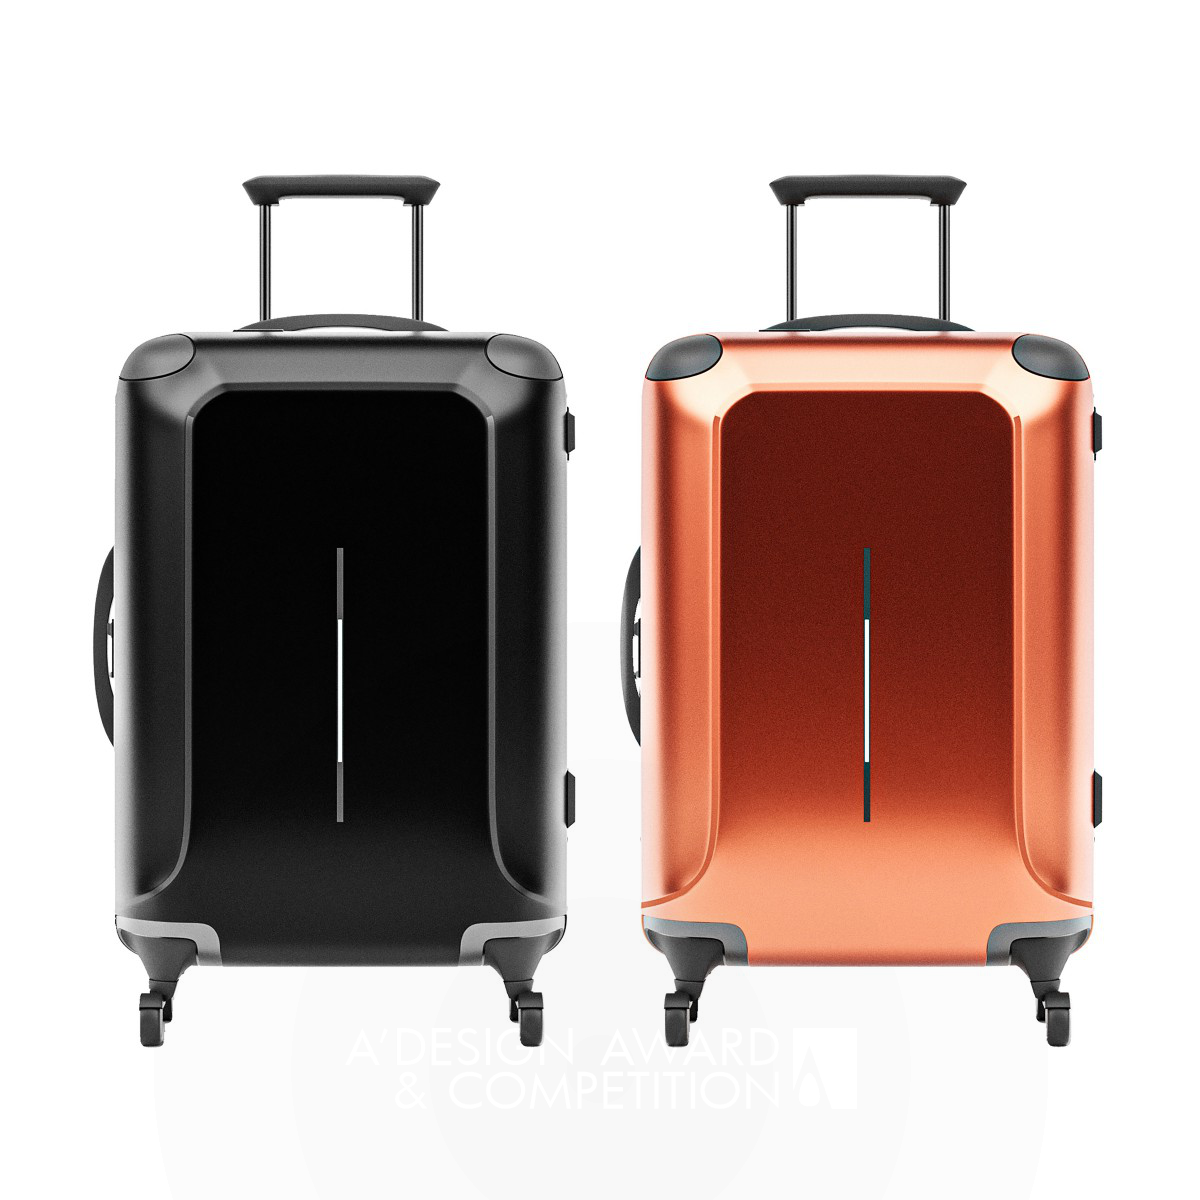 Voyz Smart Suitcase by Sanaz Hassannezhad